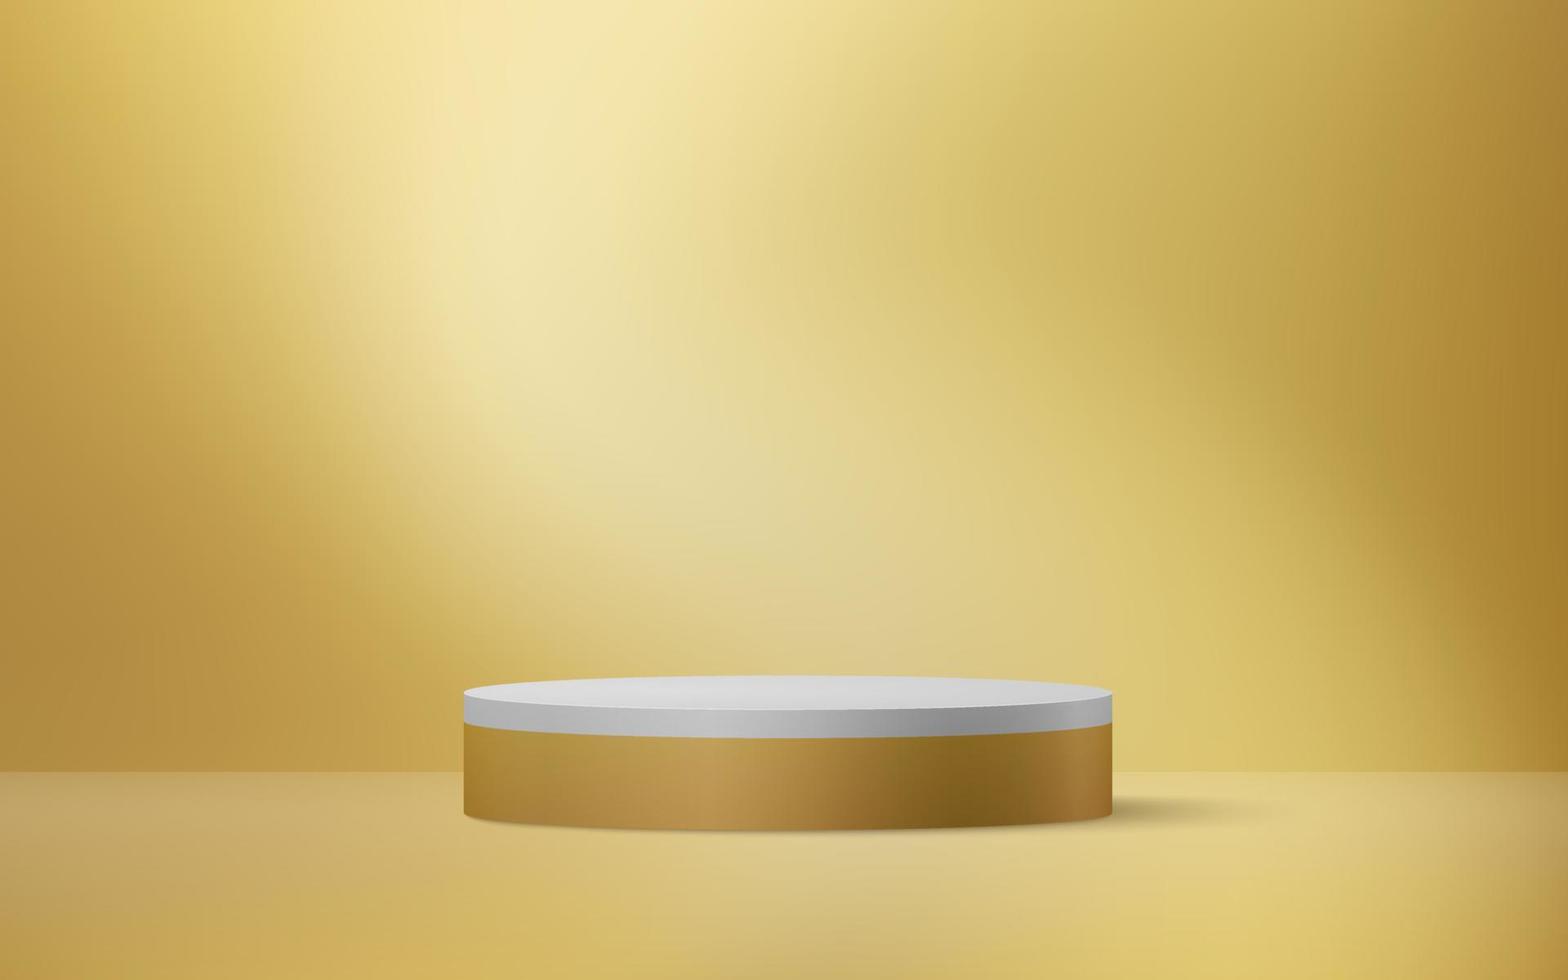 diseño de maqueta de podio 3d dorado. ilustración vectorial eps10 vector